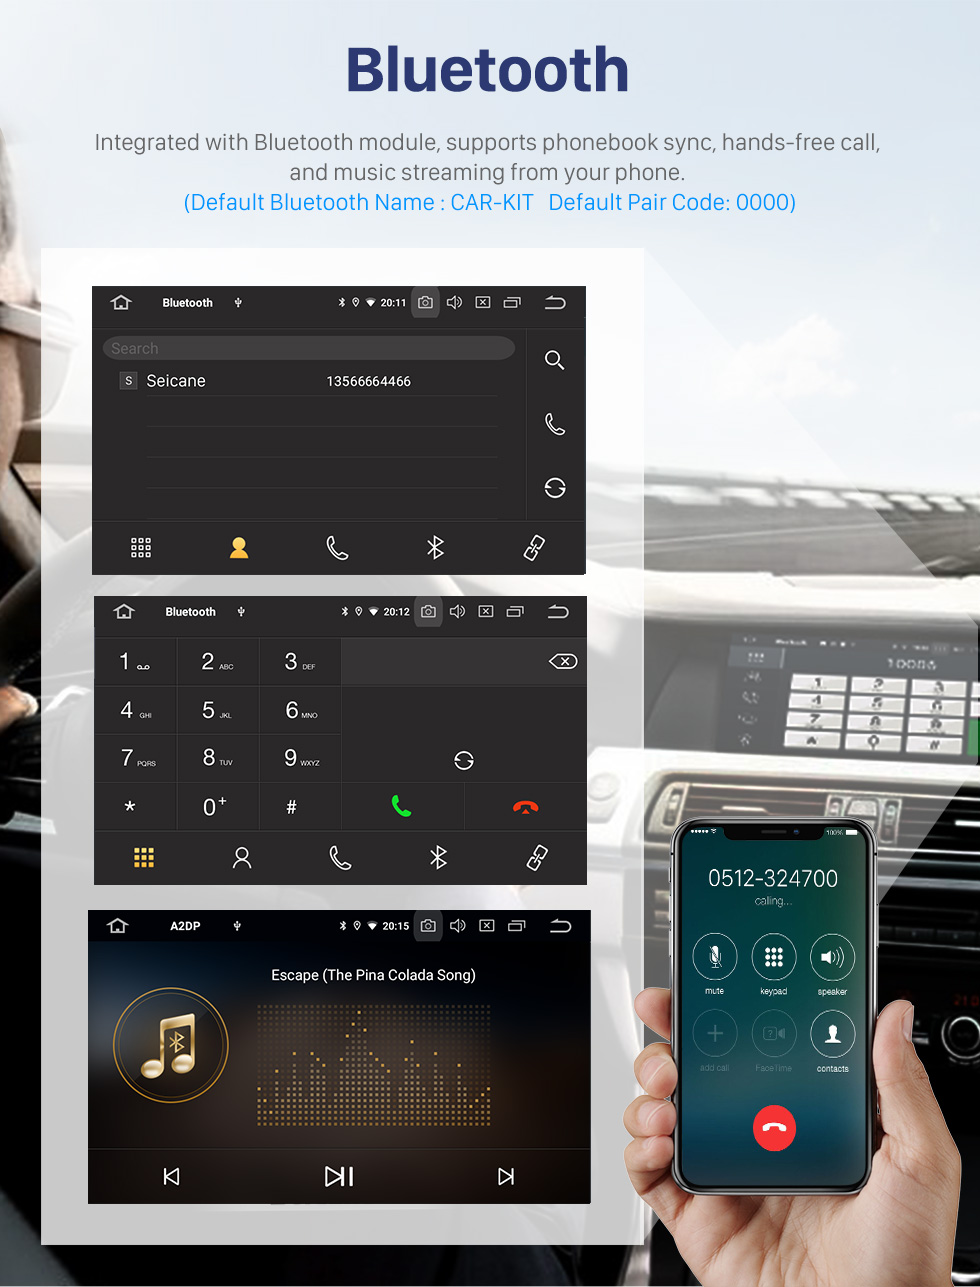 Seicane OEM 9-дюймовый Android 10.0 Radio для 1997-2004 Audi A6 S6 RS6 Bluetooth HD с сенсорным экраном GPS-навигация AUX Поддержка USB Carplay DVR OBD Камера заднего вида